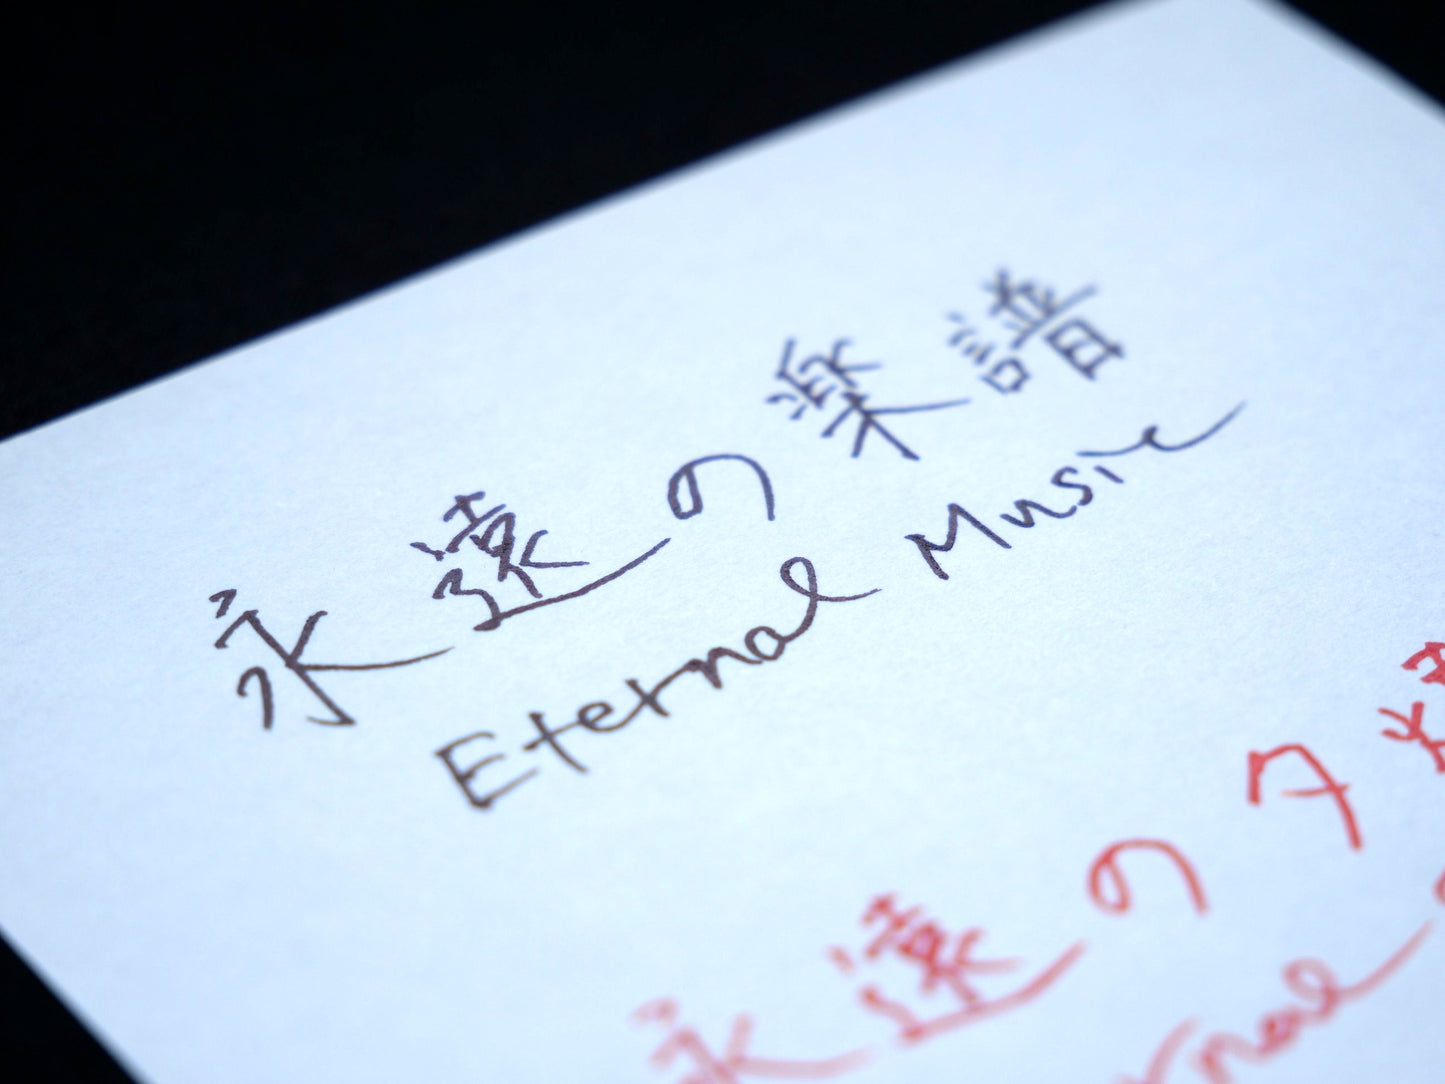 Ink tells more "Eternal Music"